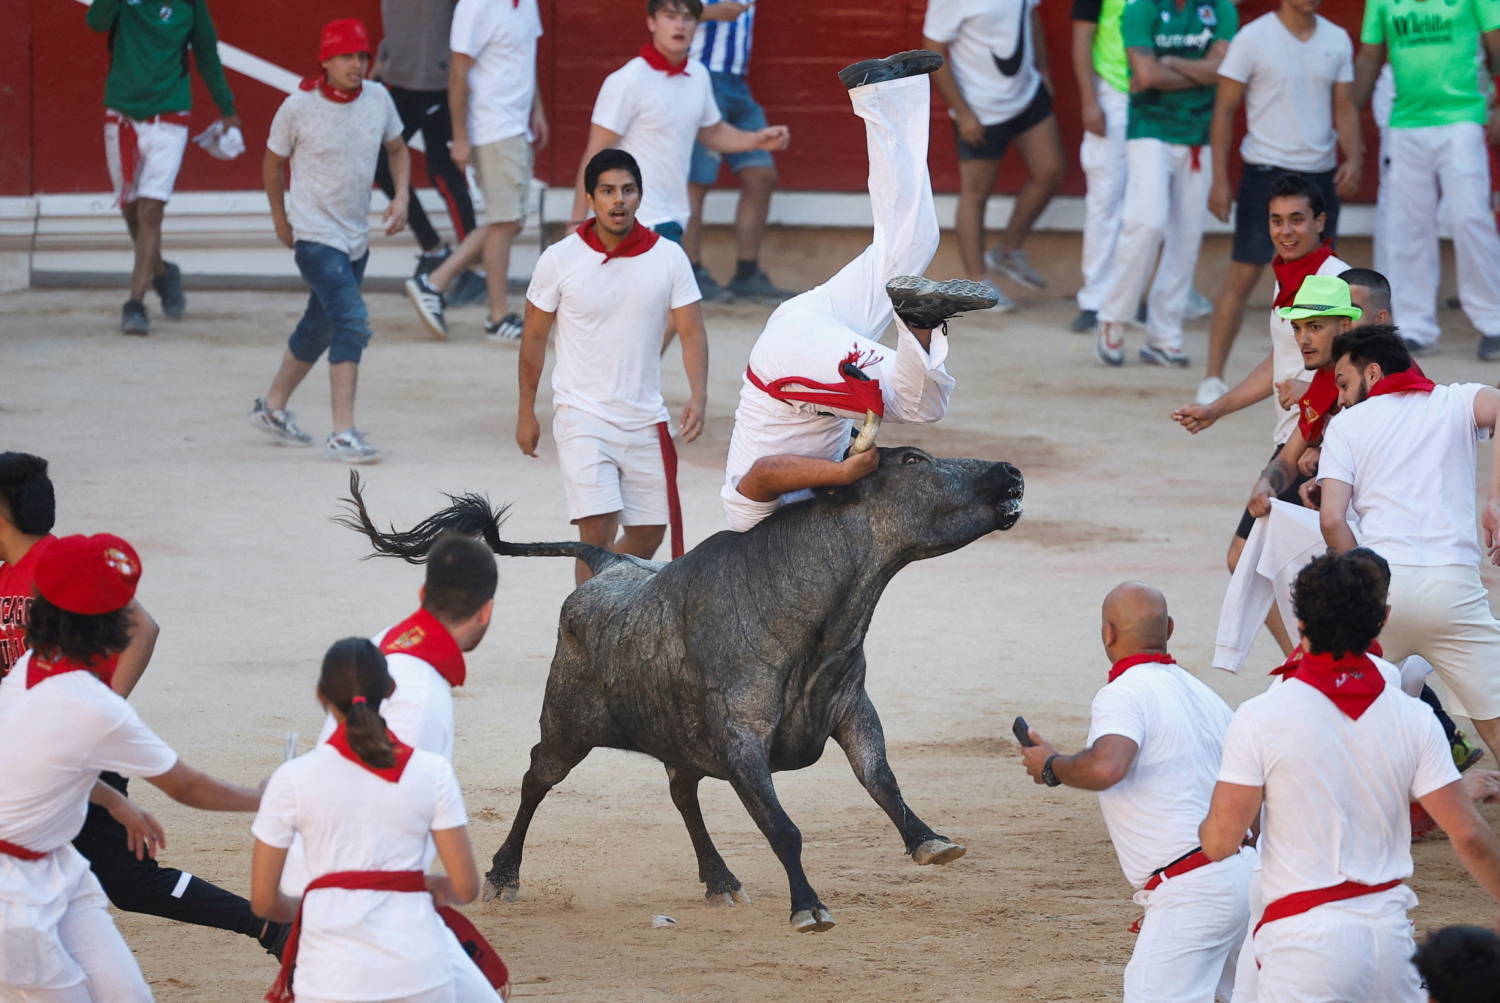 Dez feridos em corrida de touros na Espanha 